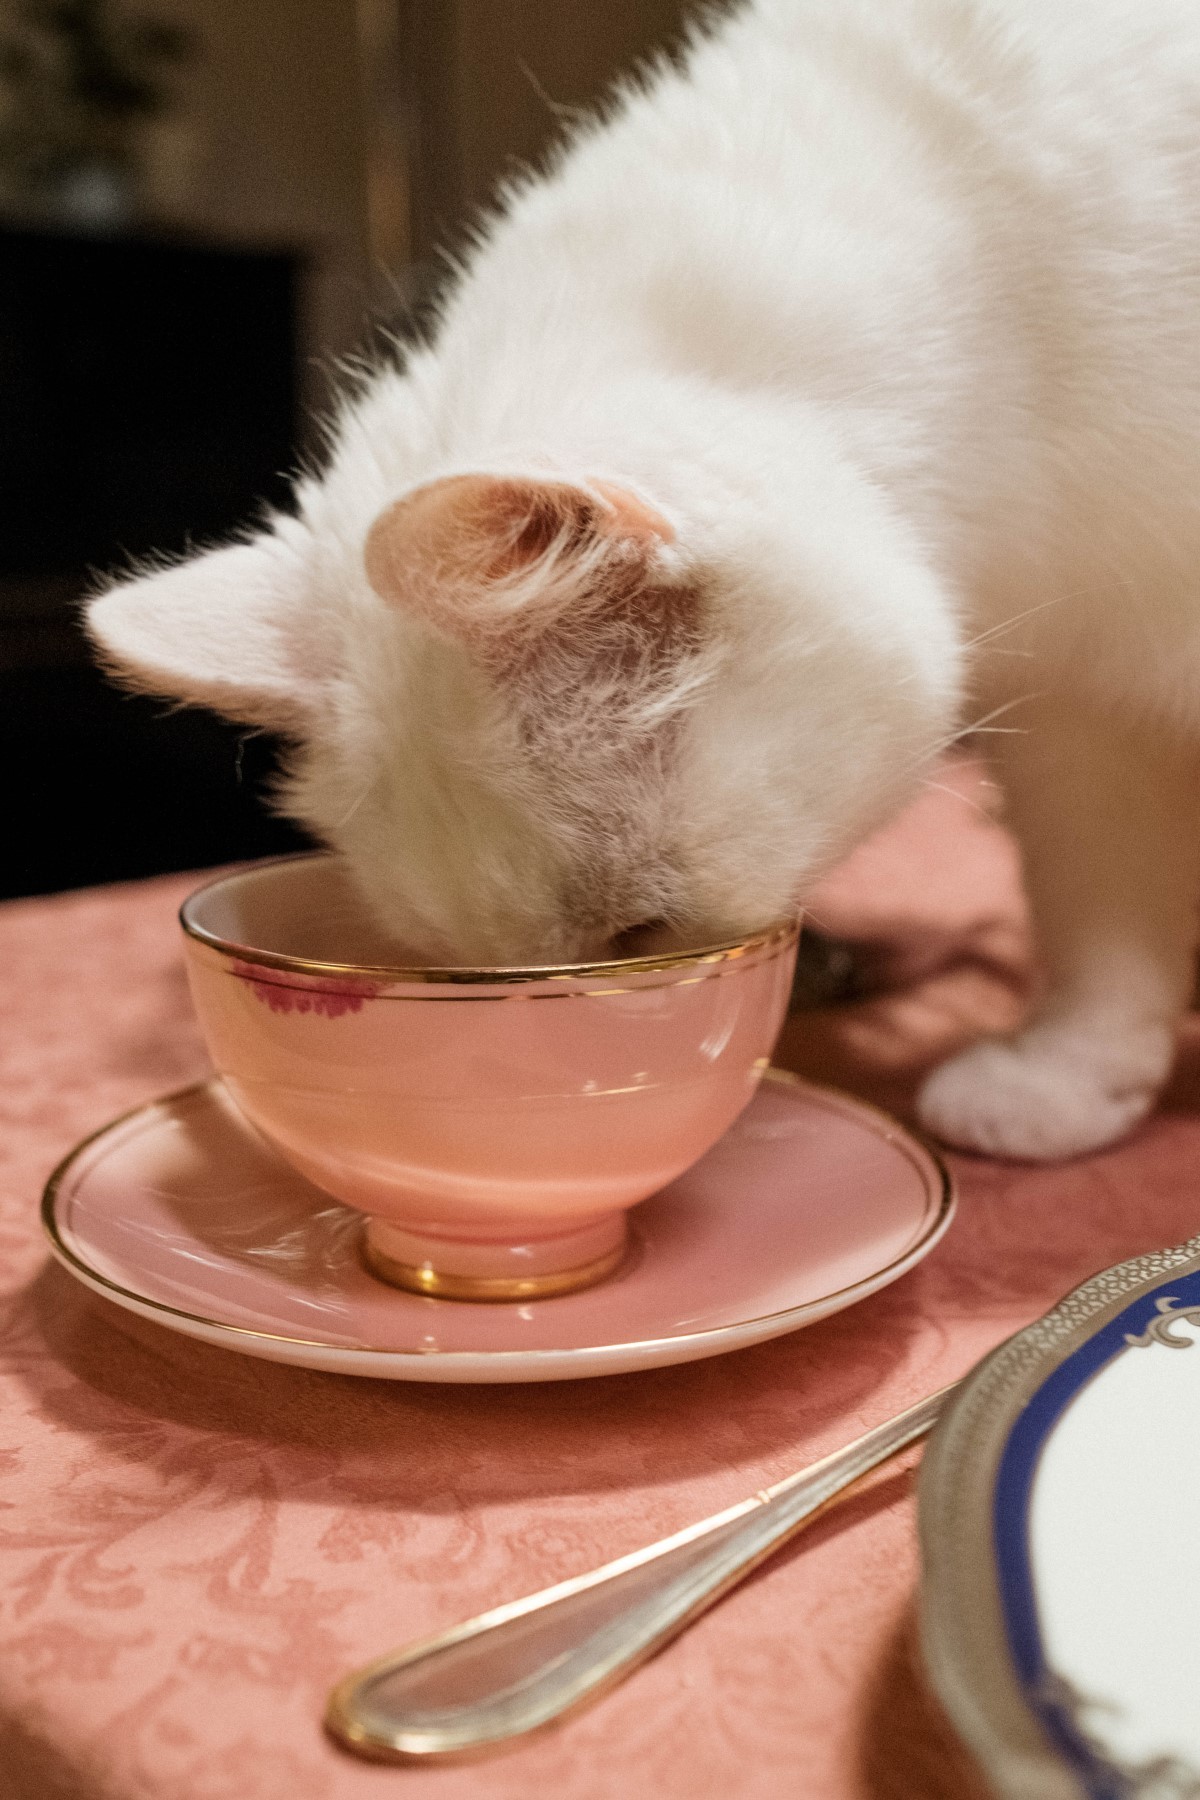 Gatos bebem pouca água naturalmente, por isso, é adequado oferecer ração úmida para eles todos os dias (Foto: Pexels / cottonbro / CreativeCommons)